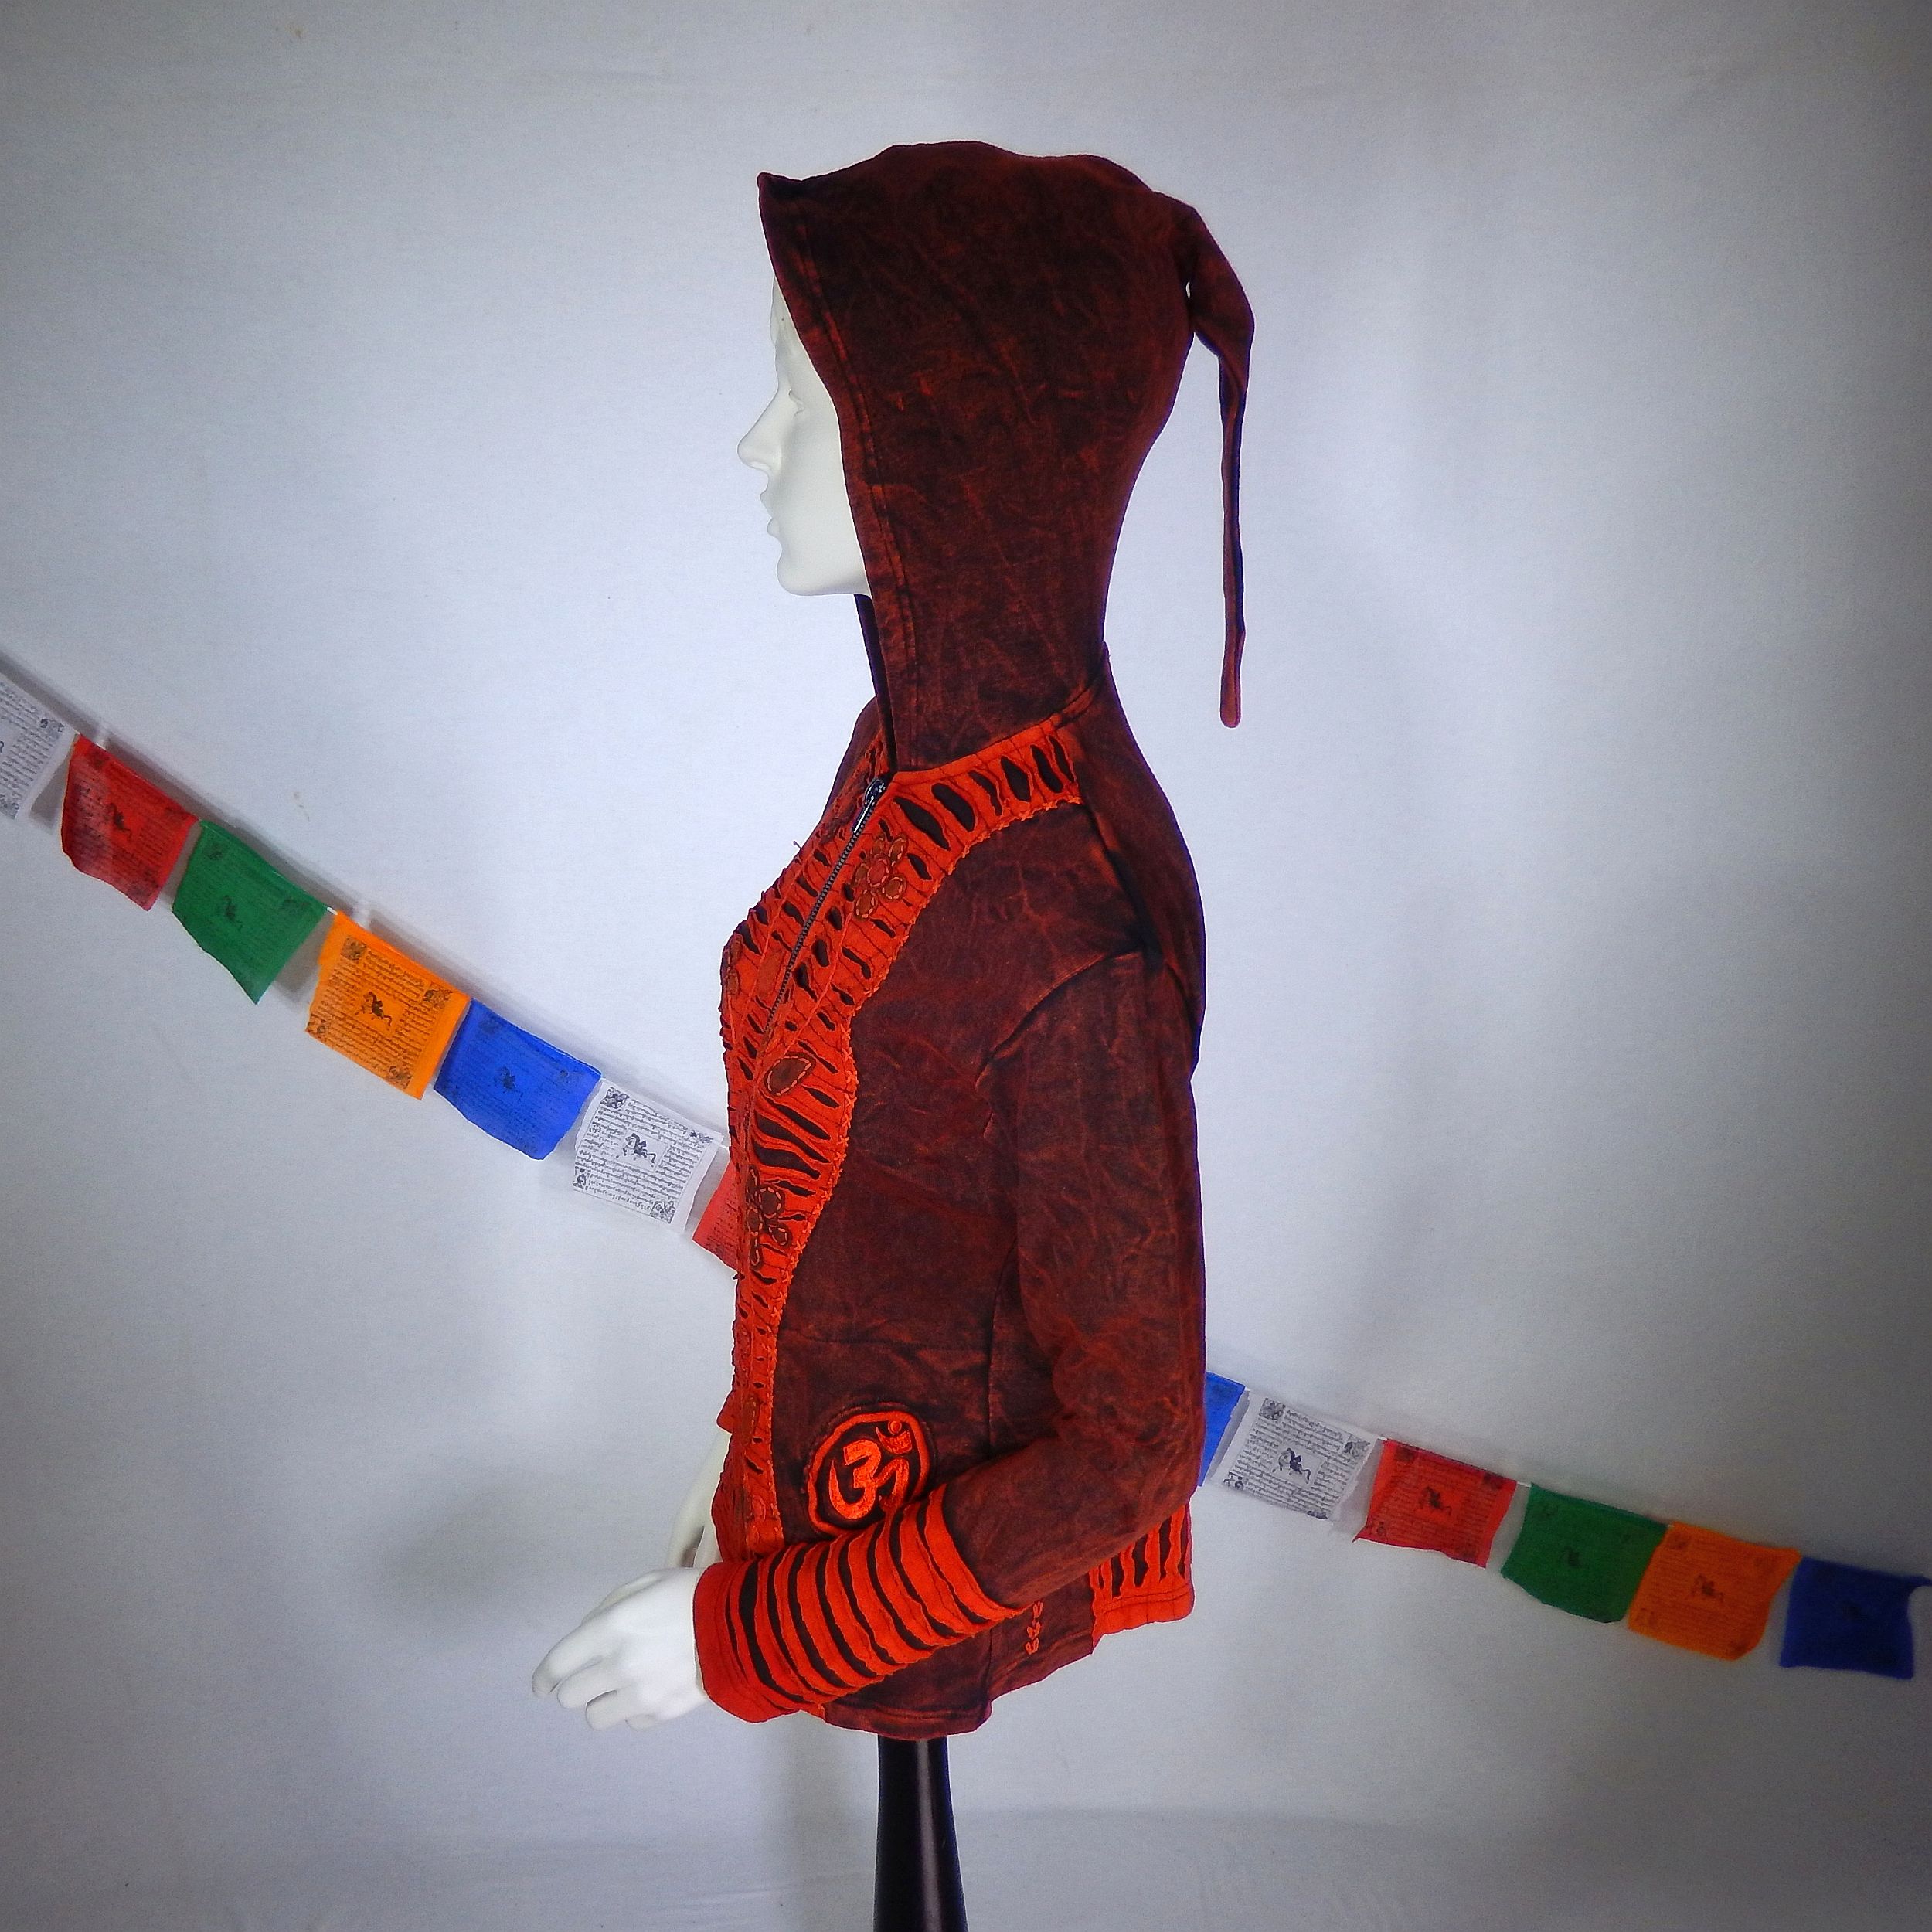 Jacke mit Cutout und gestickten Blumen, Om - 100% Baumwolle - mit Kapuze - im Stonewash Used-Look Design - Deine neue Lieblingsjacke für einen farbenfrohen Herbst - Fair gehandelt aus Nepal